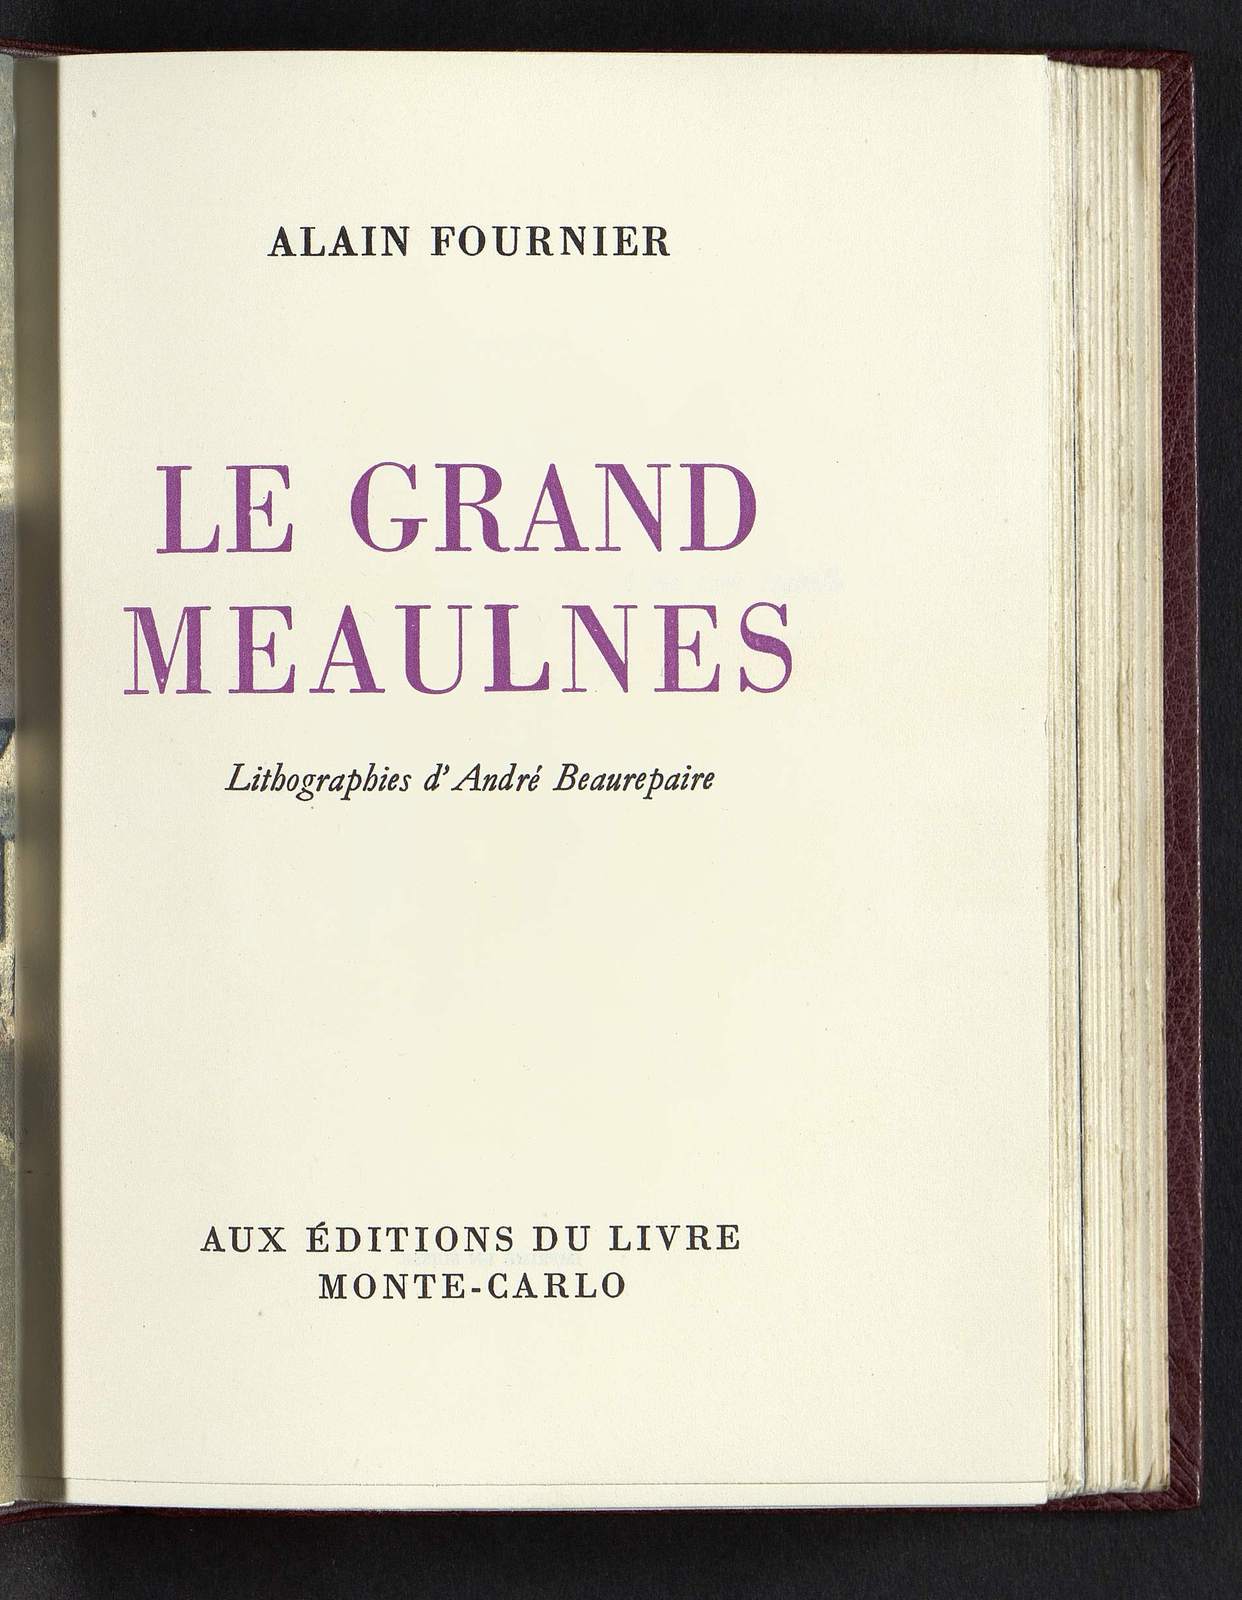 Le Grand Meaulnes, Les trois lettres de Meaulnes, illustré par André Beaurepaire, Editions du Livre, 1950